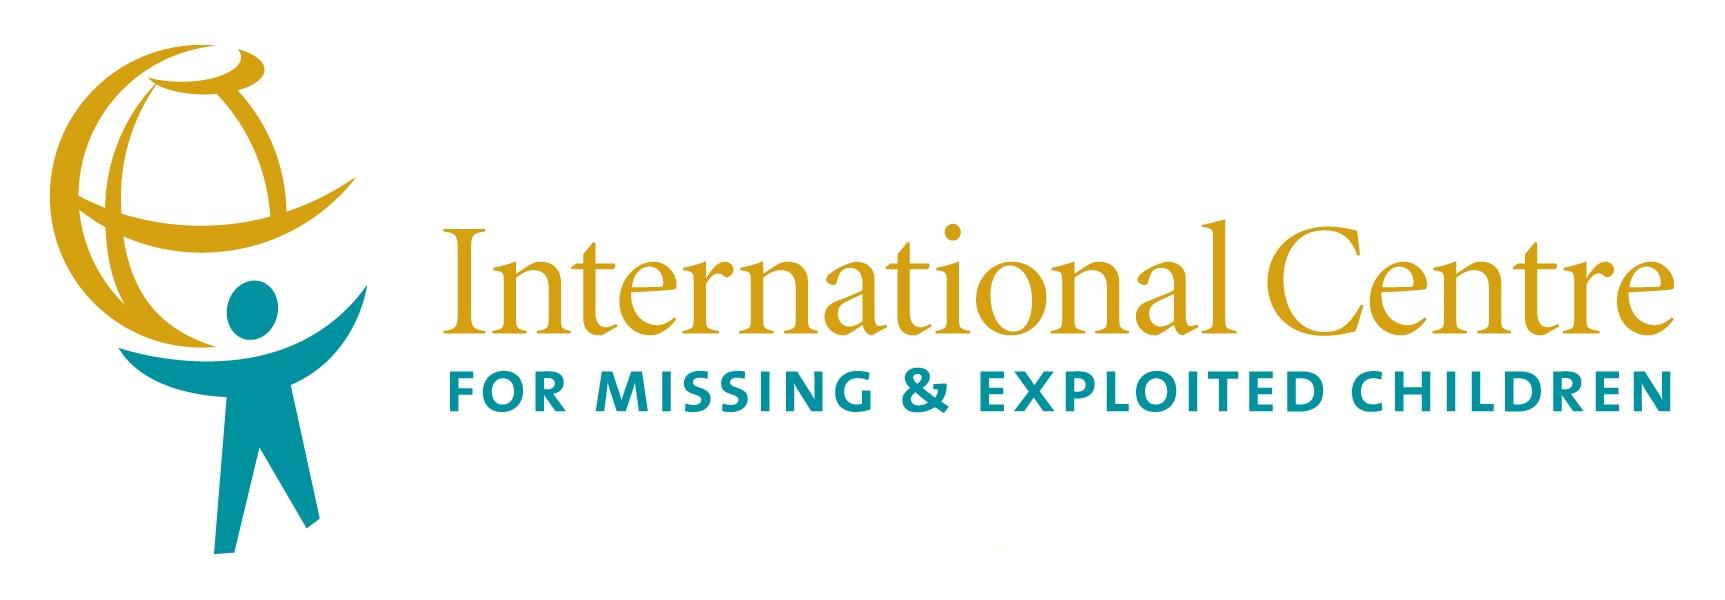 logo for International Centre for Missing and Exploited Children